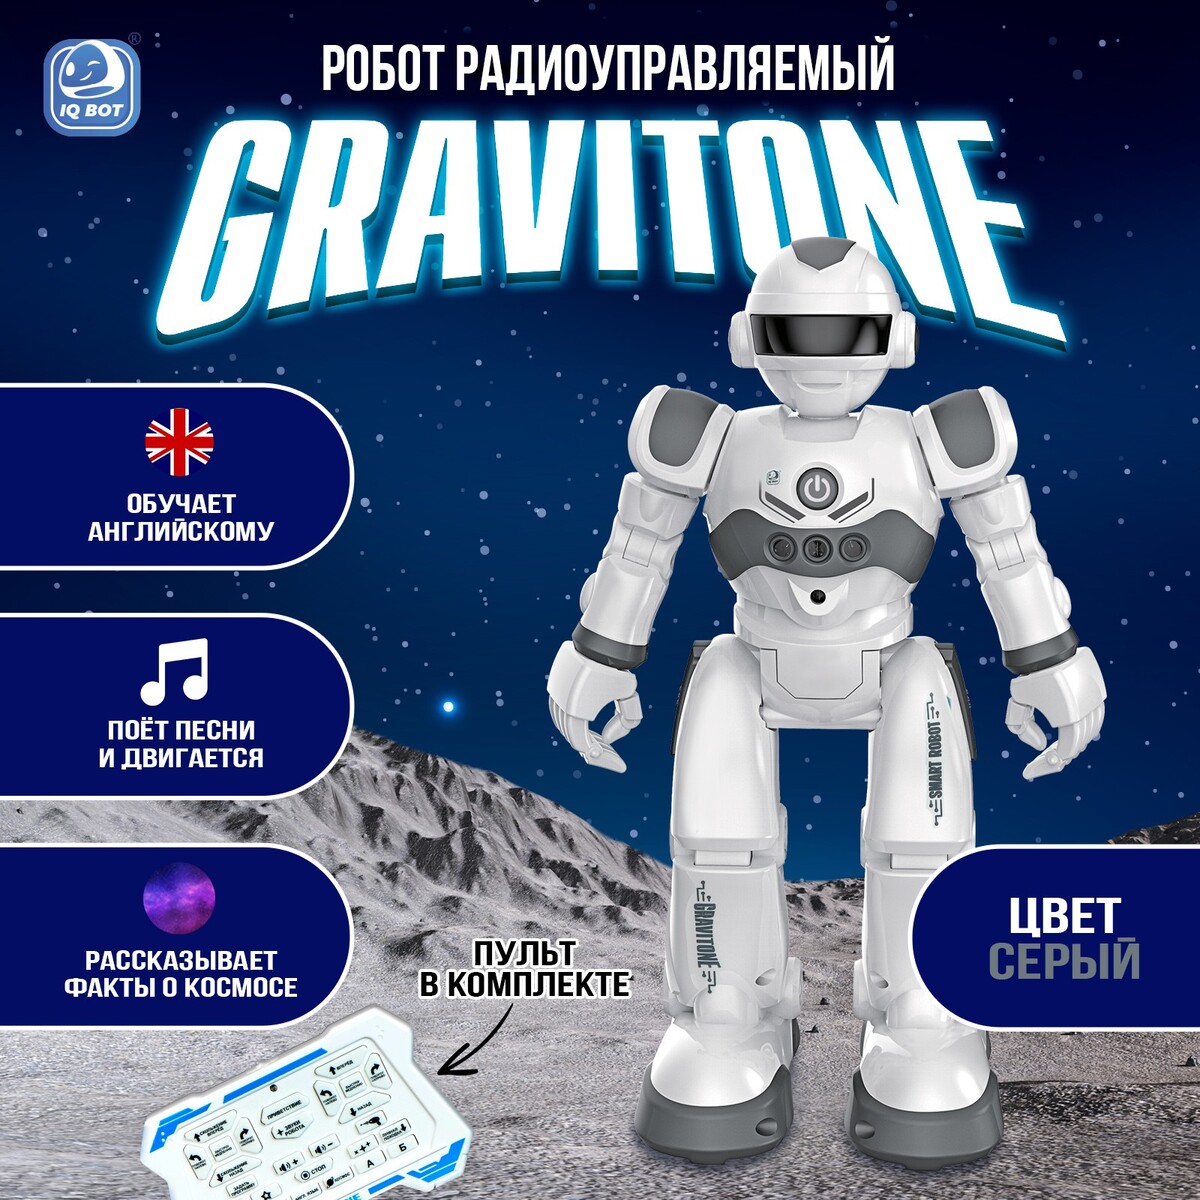 Робот радиоуправляемый iq bot gravitone, русское озвучивание, цвет серый samewin радиоуправляемый робот для боя с ик пушкой